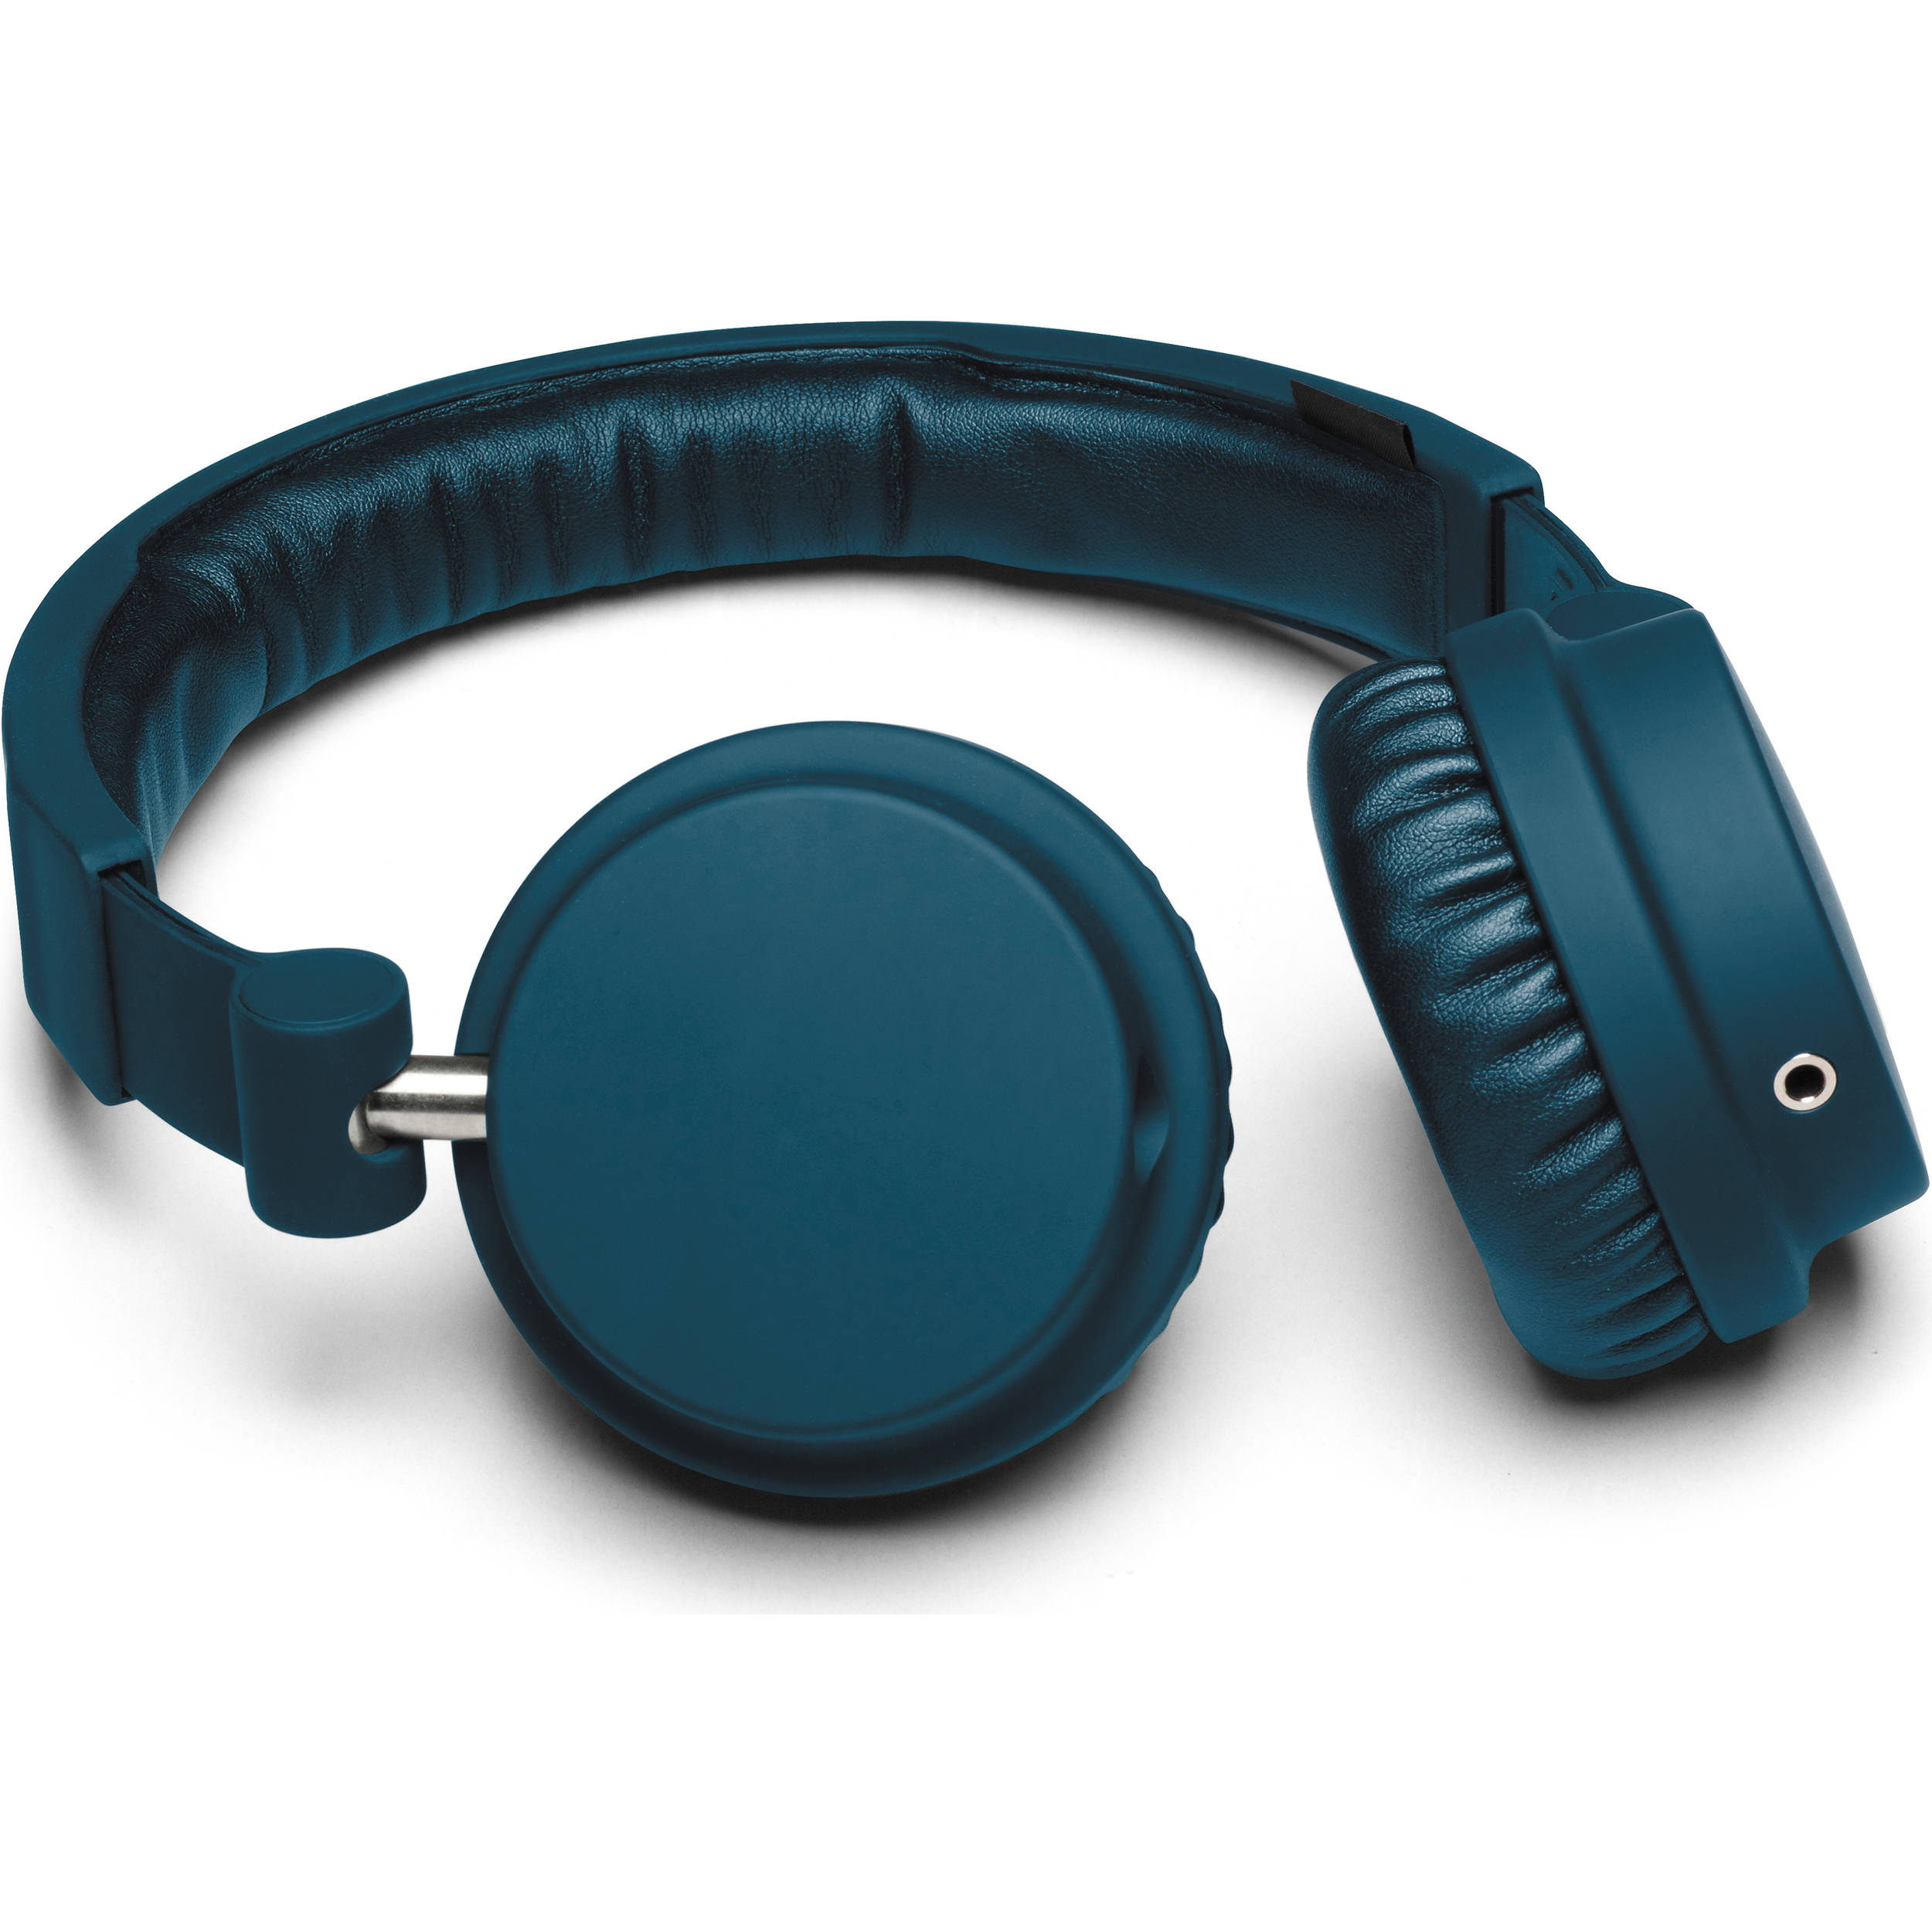 urbanears bagis in ear headphones review